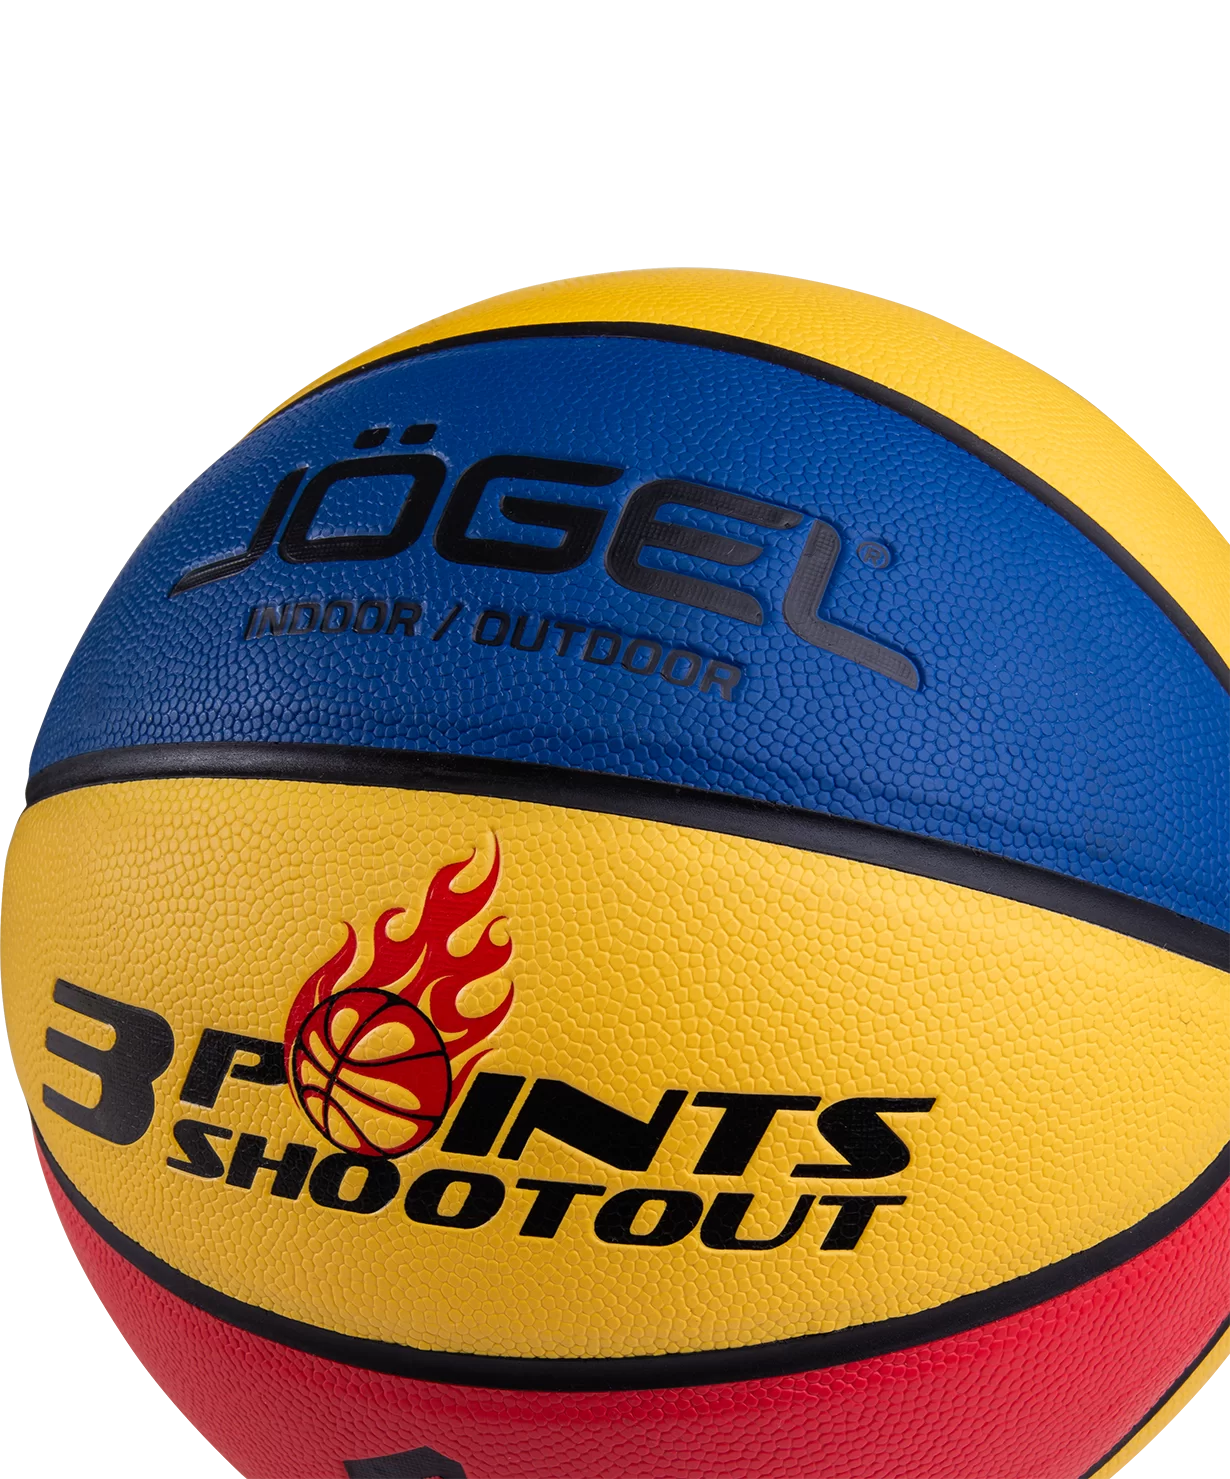 Реальное фото Мяч баскетбольный Jögel Streets 3Points №7 (BC21) УТ-00017476 от магазина СпортСЕ